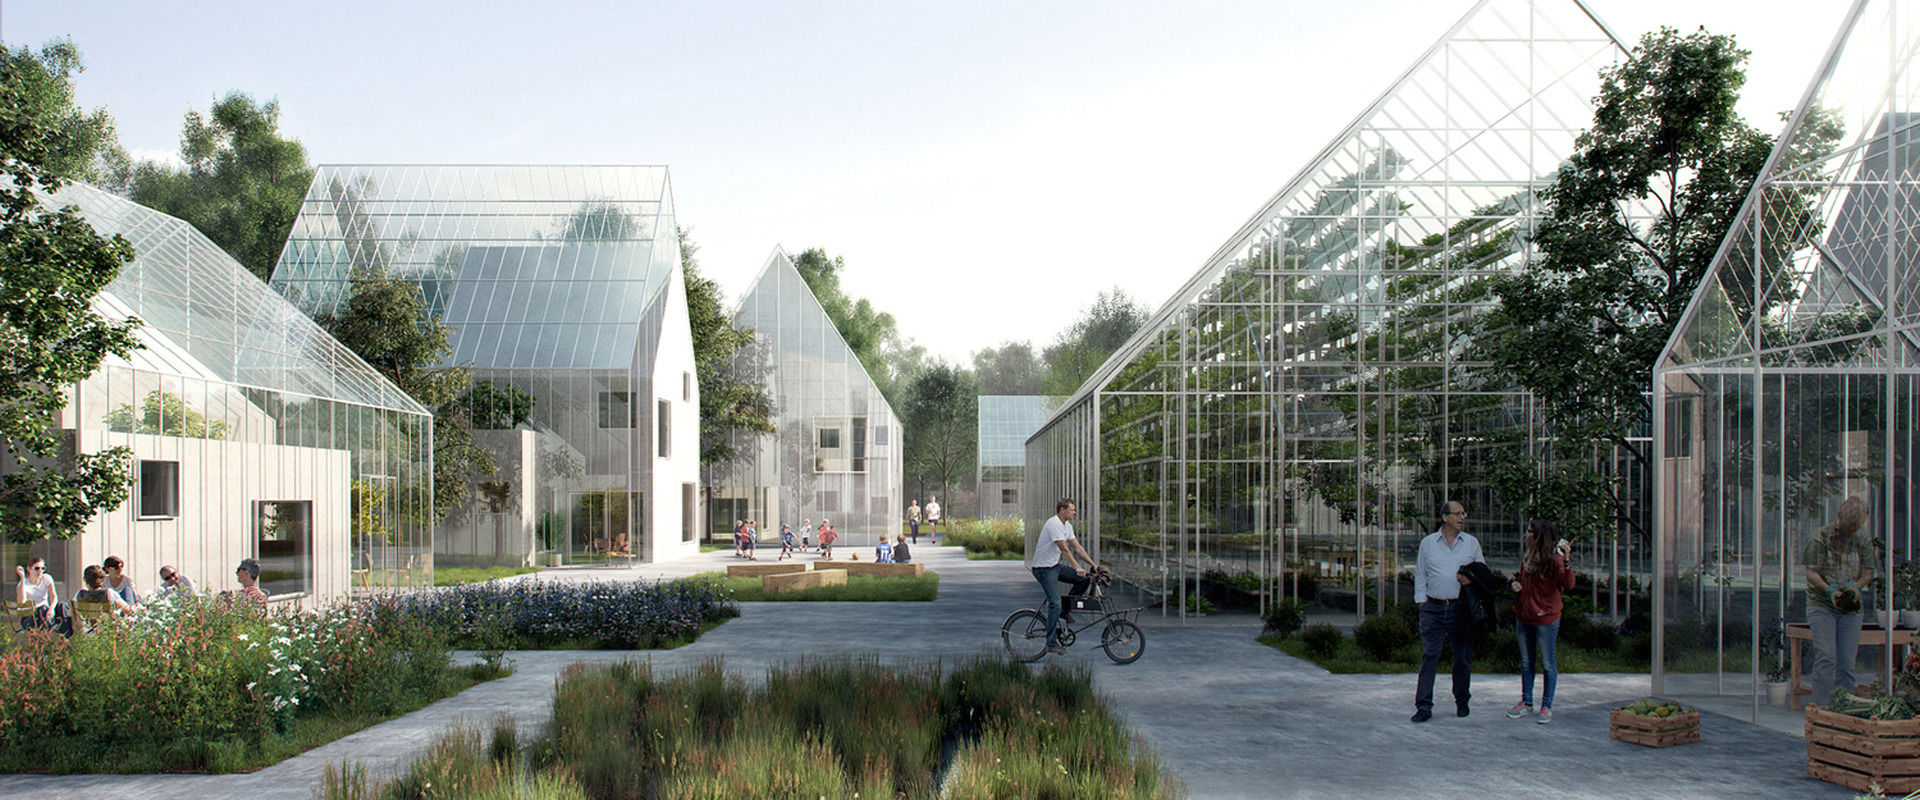  Будущее здесь: TESLA строит автономные колонии будущего в Нидерландах - фото 1